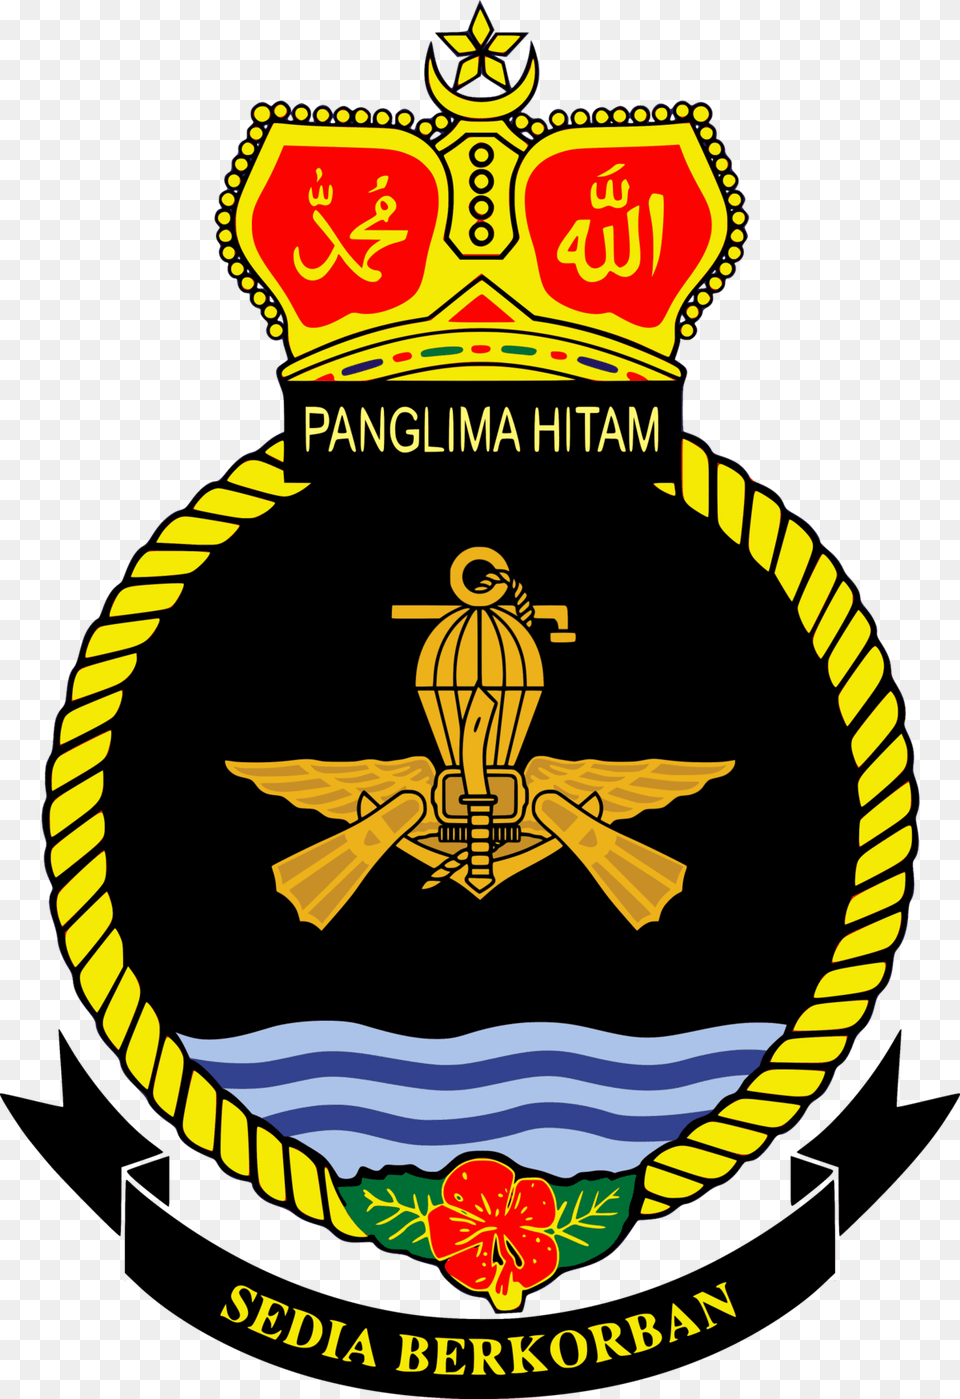 Royal Malaysian Navy Logo, Badge, Emblem, Symbol, Adult Free Png Download